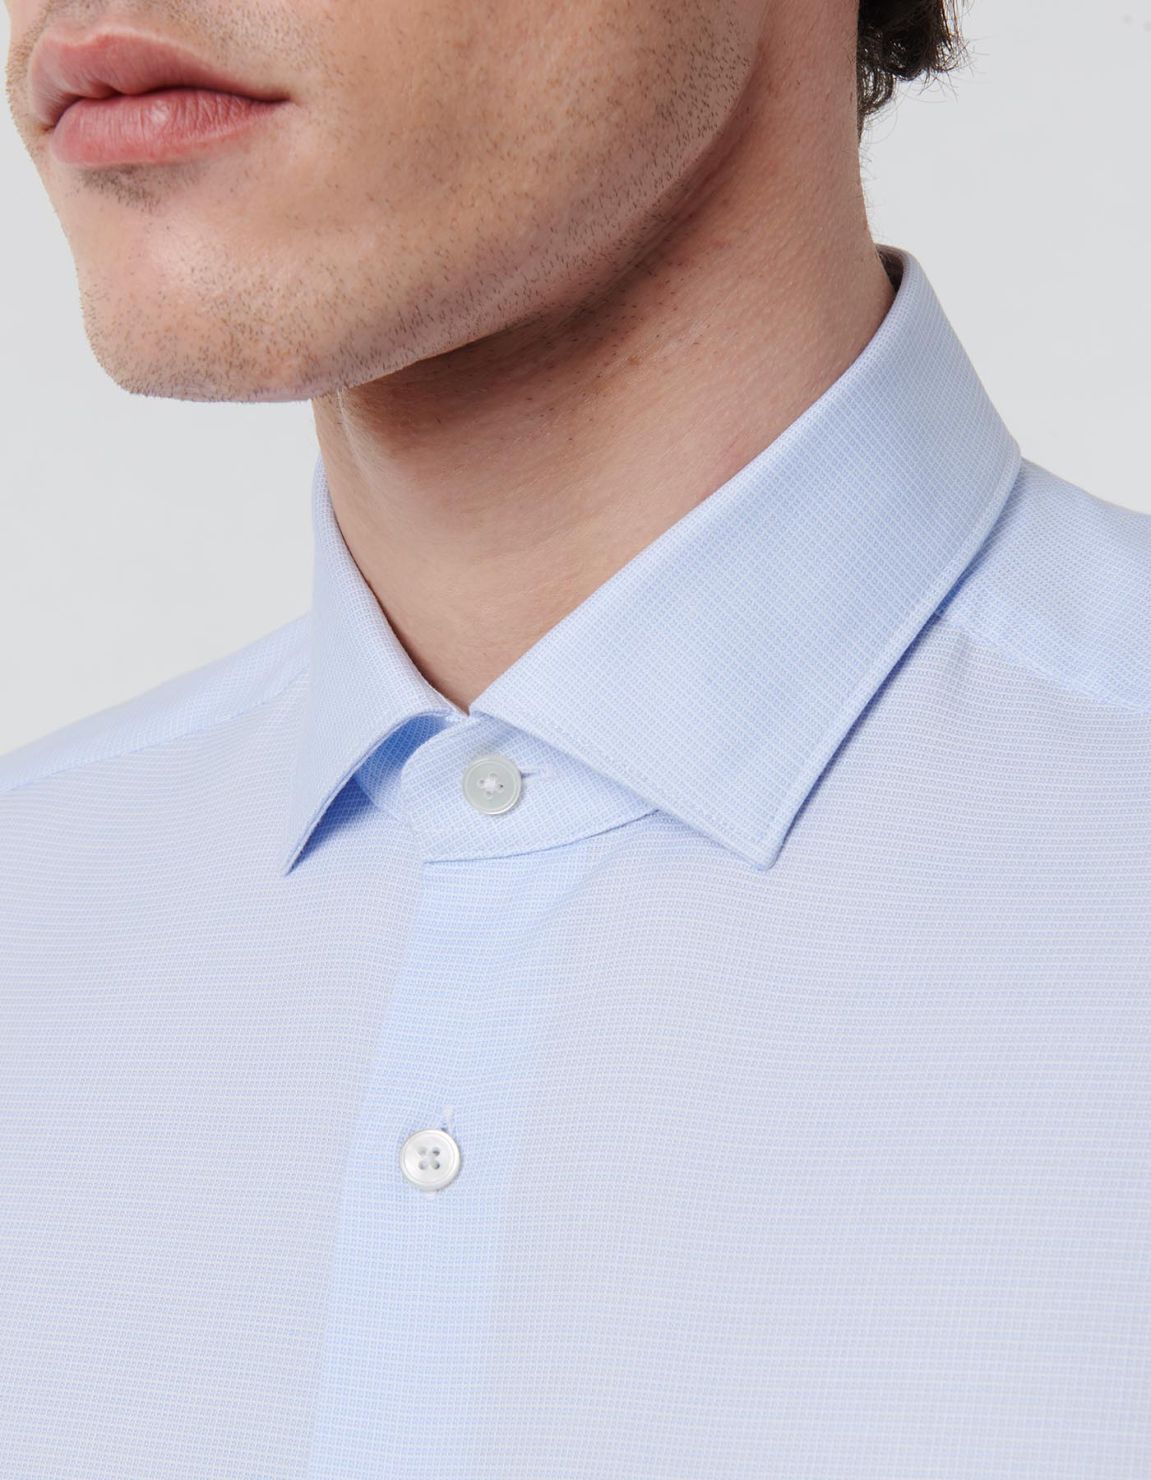 Camisa Cuello francés pequeño Estampado Texturizado Celeste Slim Fit 2